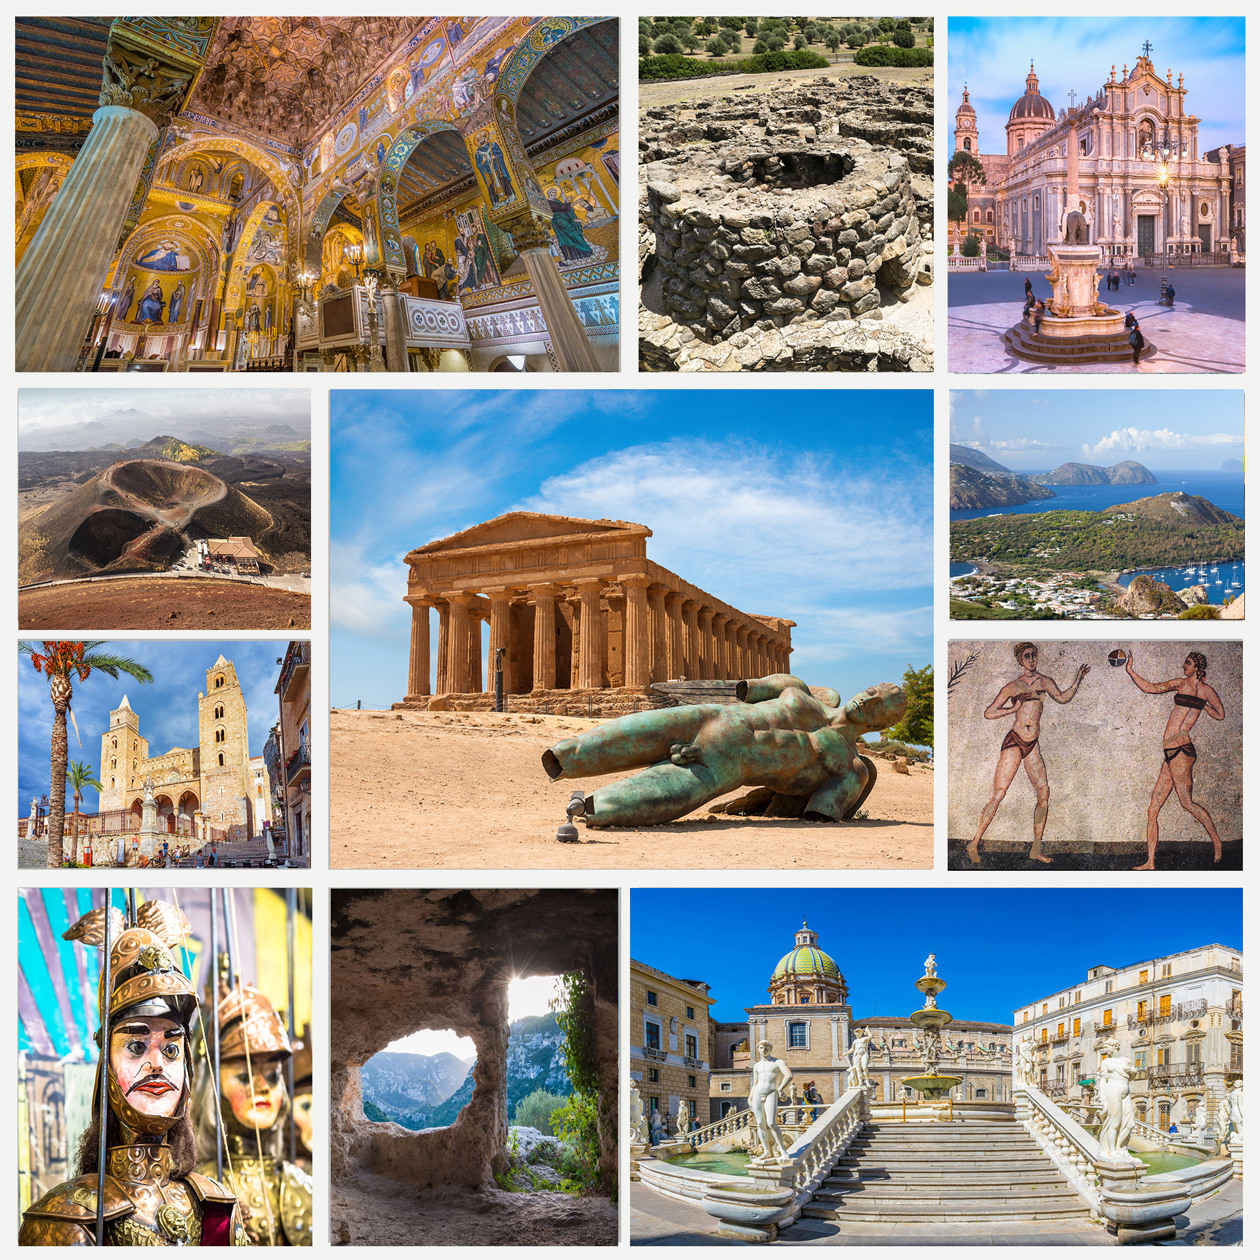 siti del Patrimonio Mondiale in Sicilia e Sardegna Copyright © Sisterscom.com  / Avion Tourism Magazine